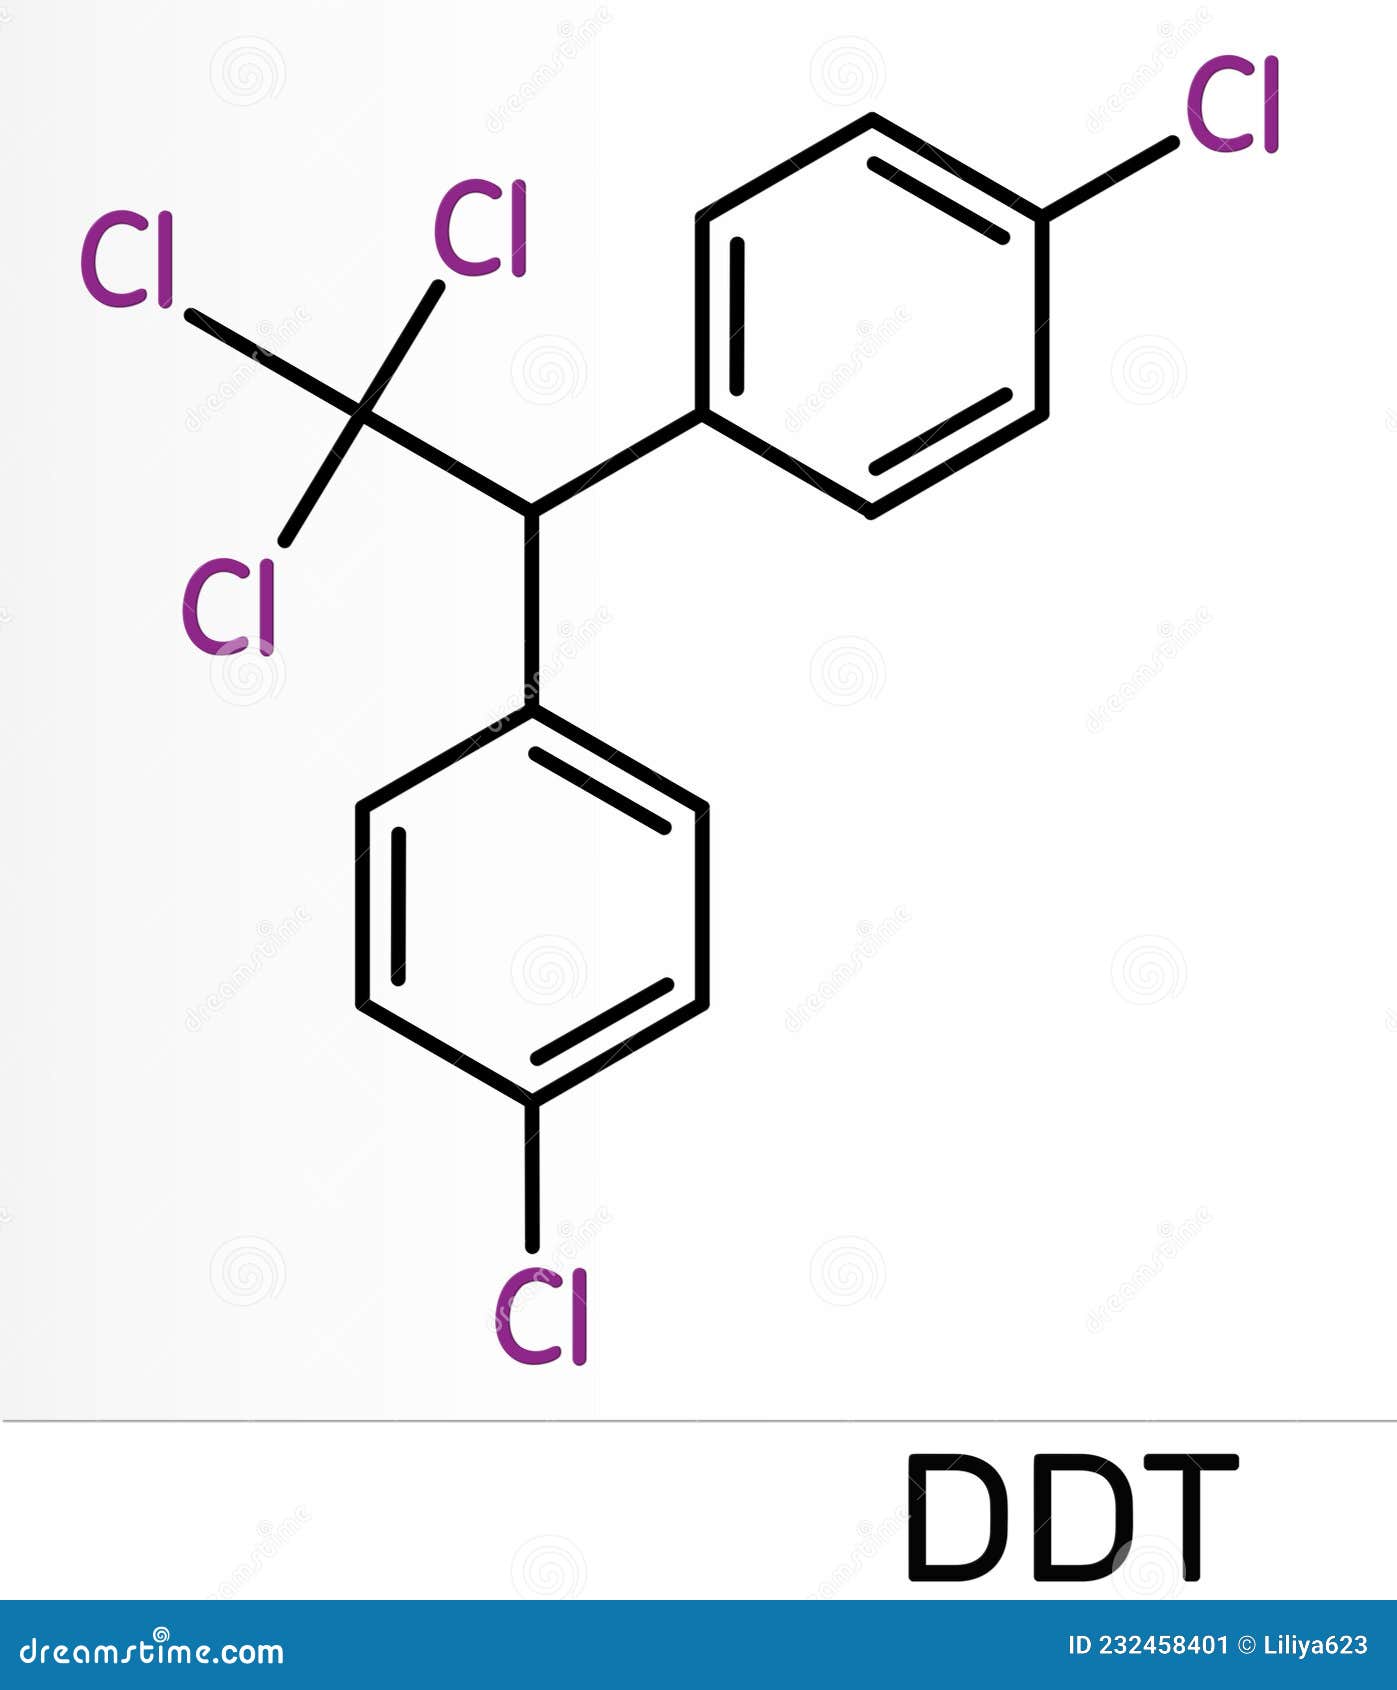 Estudio revela que el DDT altera las hormonas durante generaciones